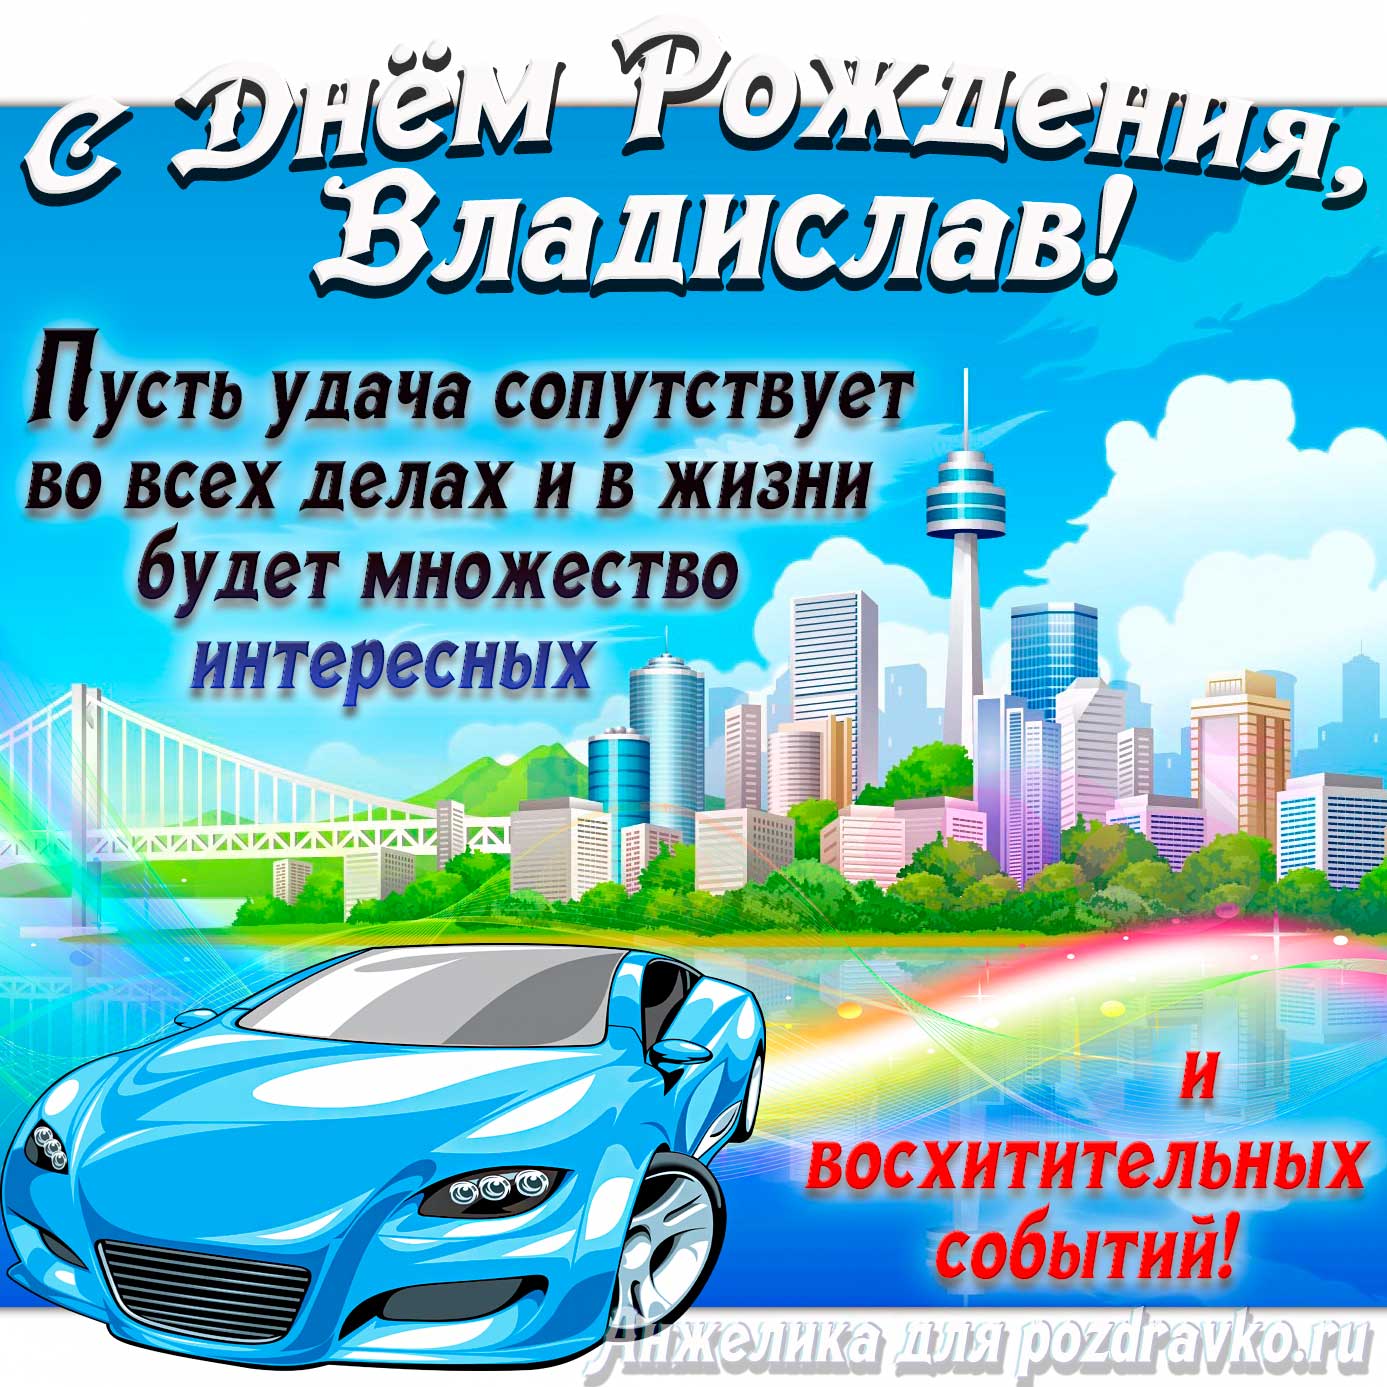 Открытка - с Днём Рождения Владислав с голубой машиной и пожеланием. Скачать бесплатно или отправить картинку.